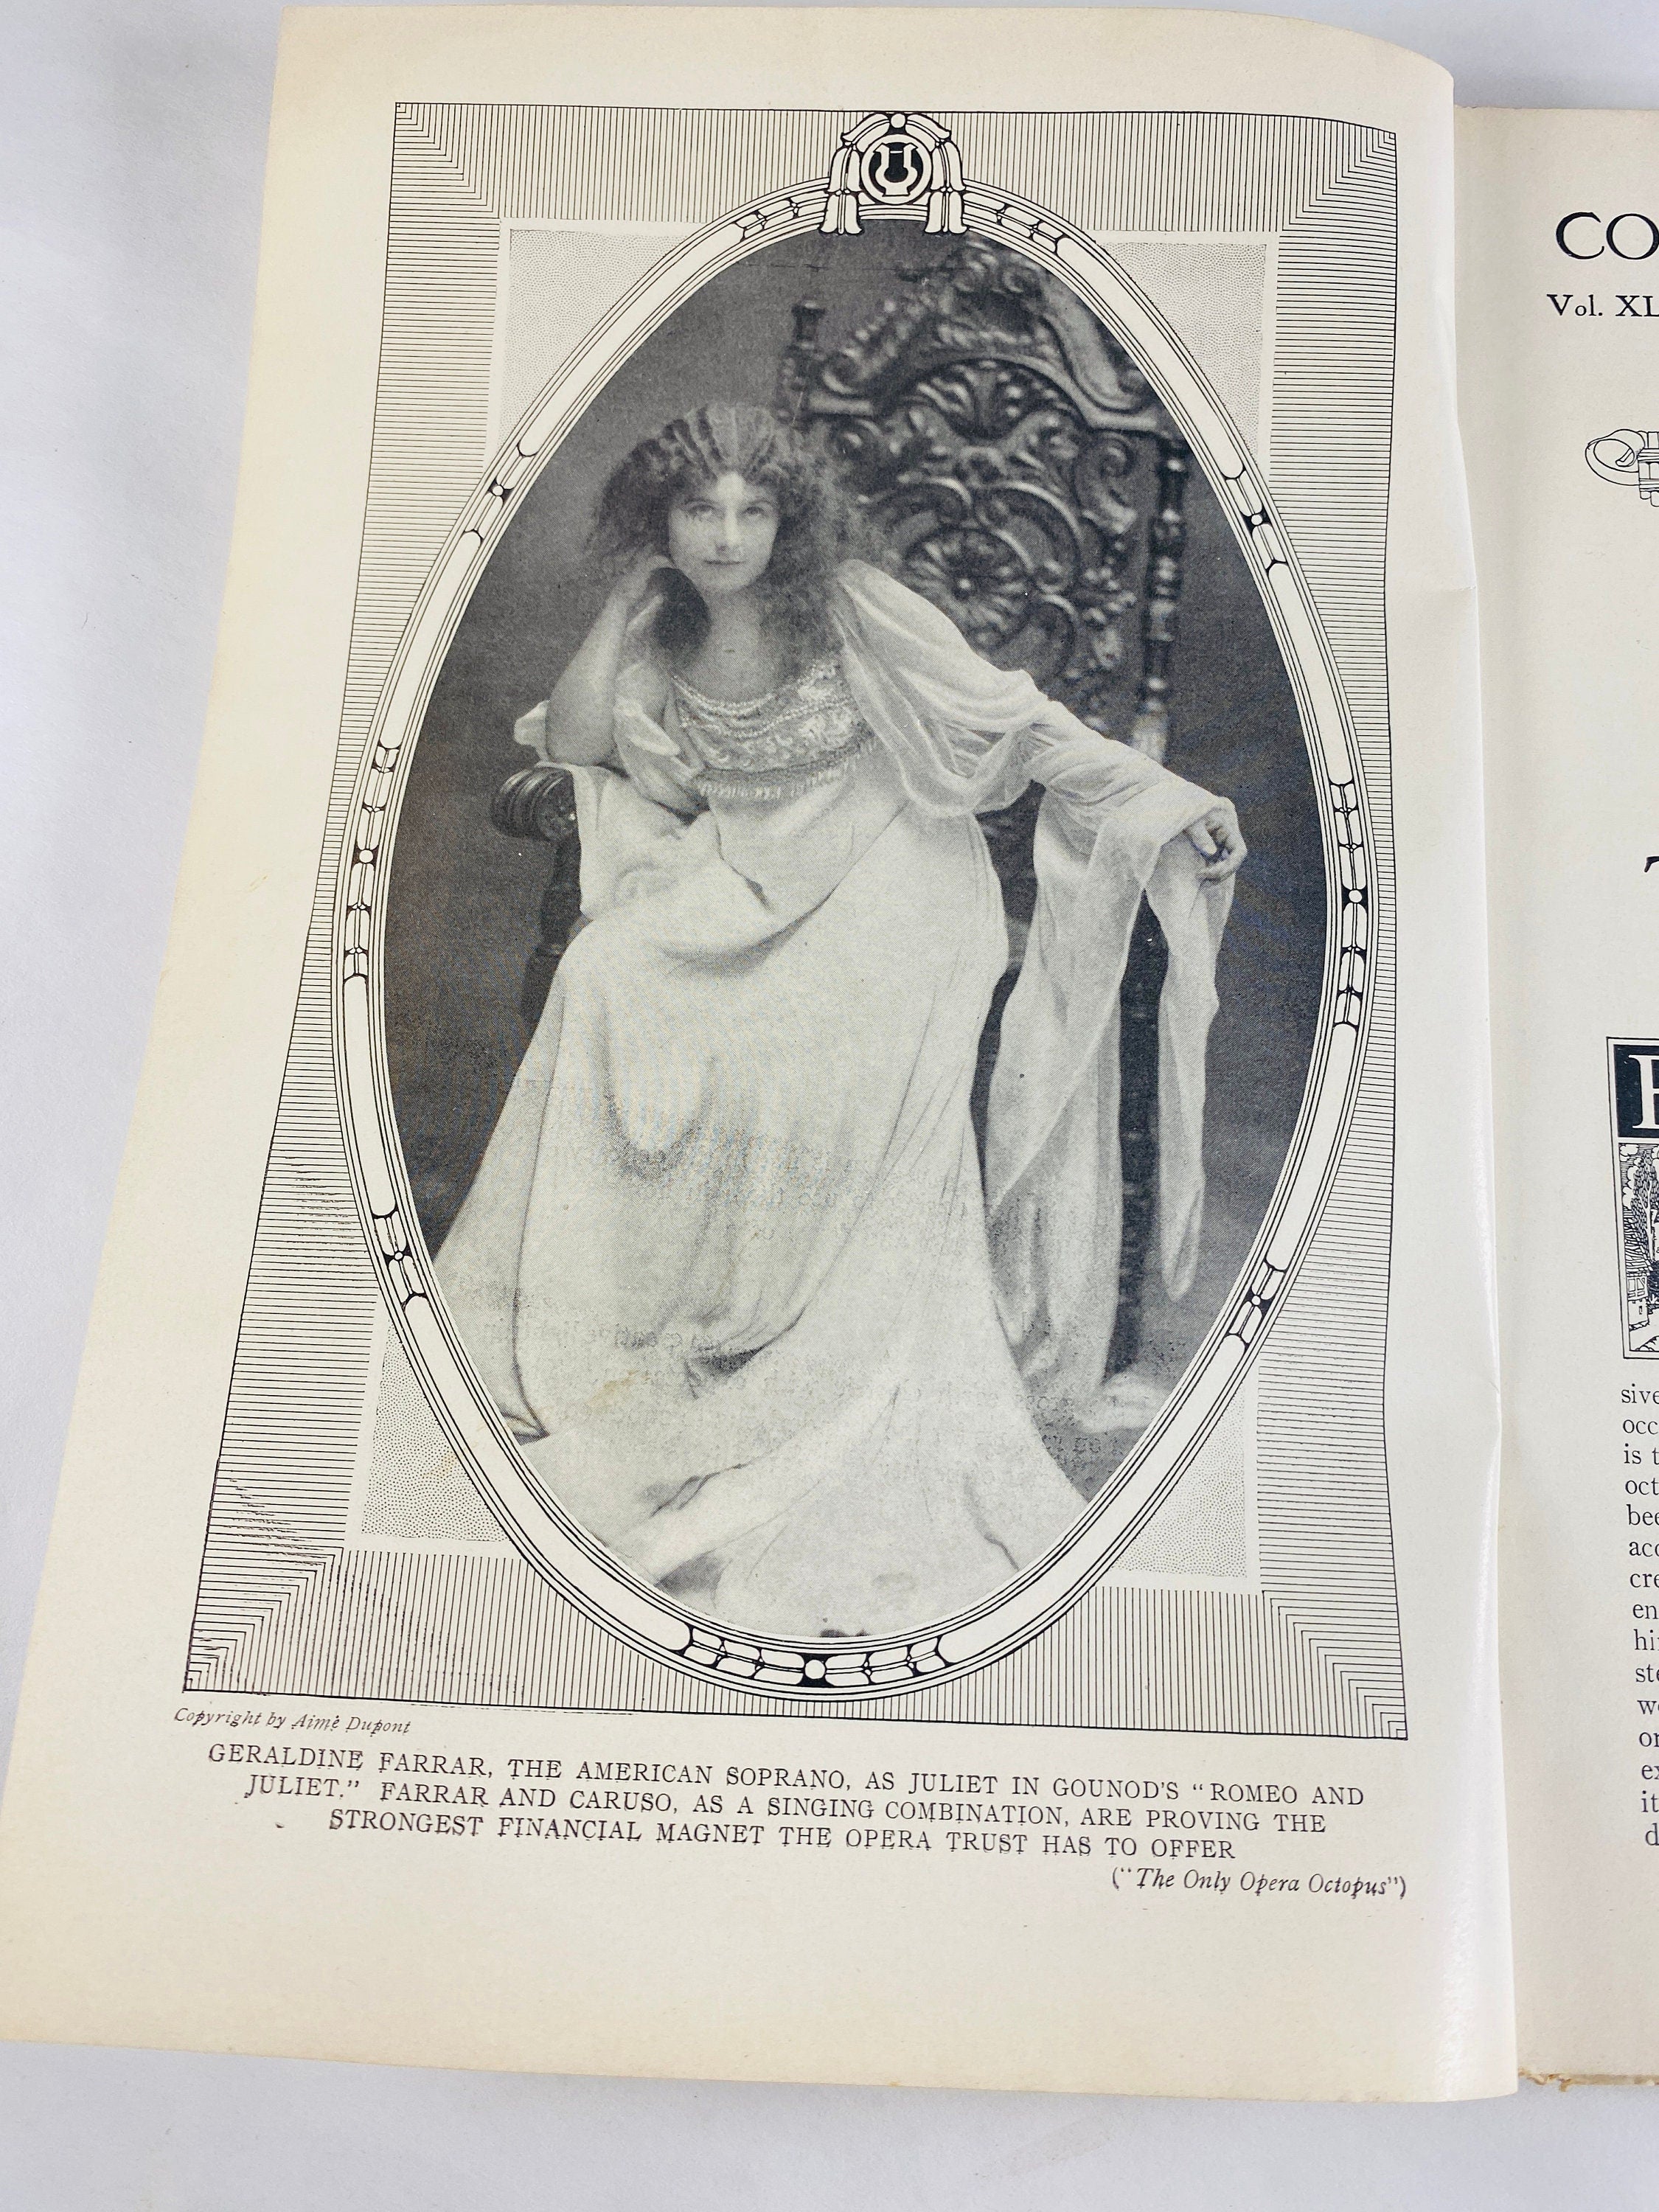 1910 vintage Cosmopolitan Magazine Vol 48 No 5 featuring Only Opera Octopus  by Pierre Van Rensselaer Key